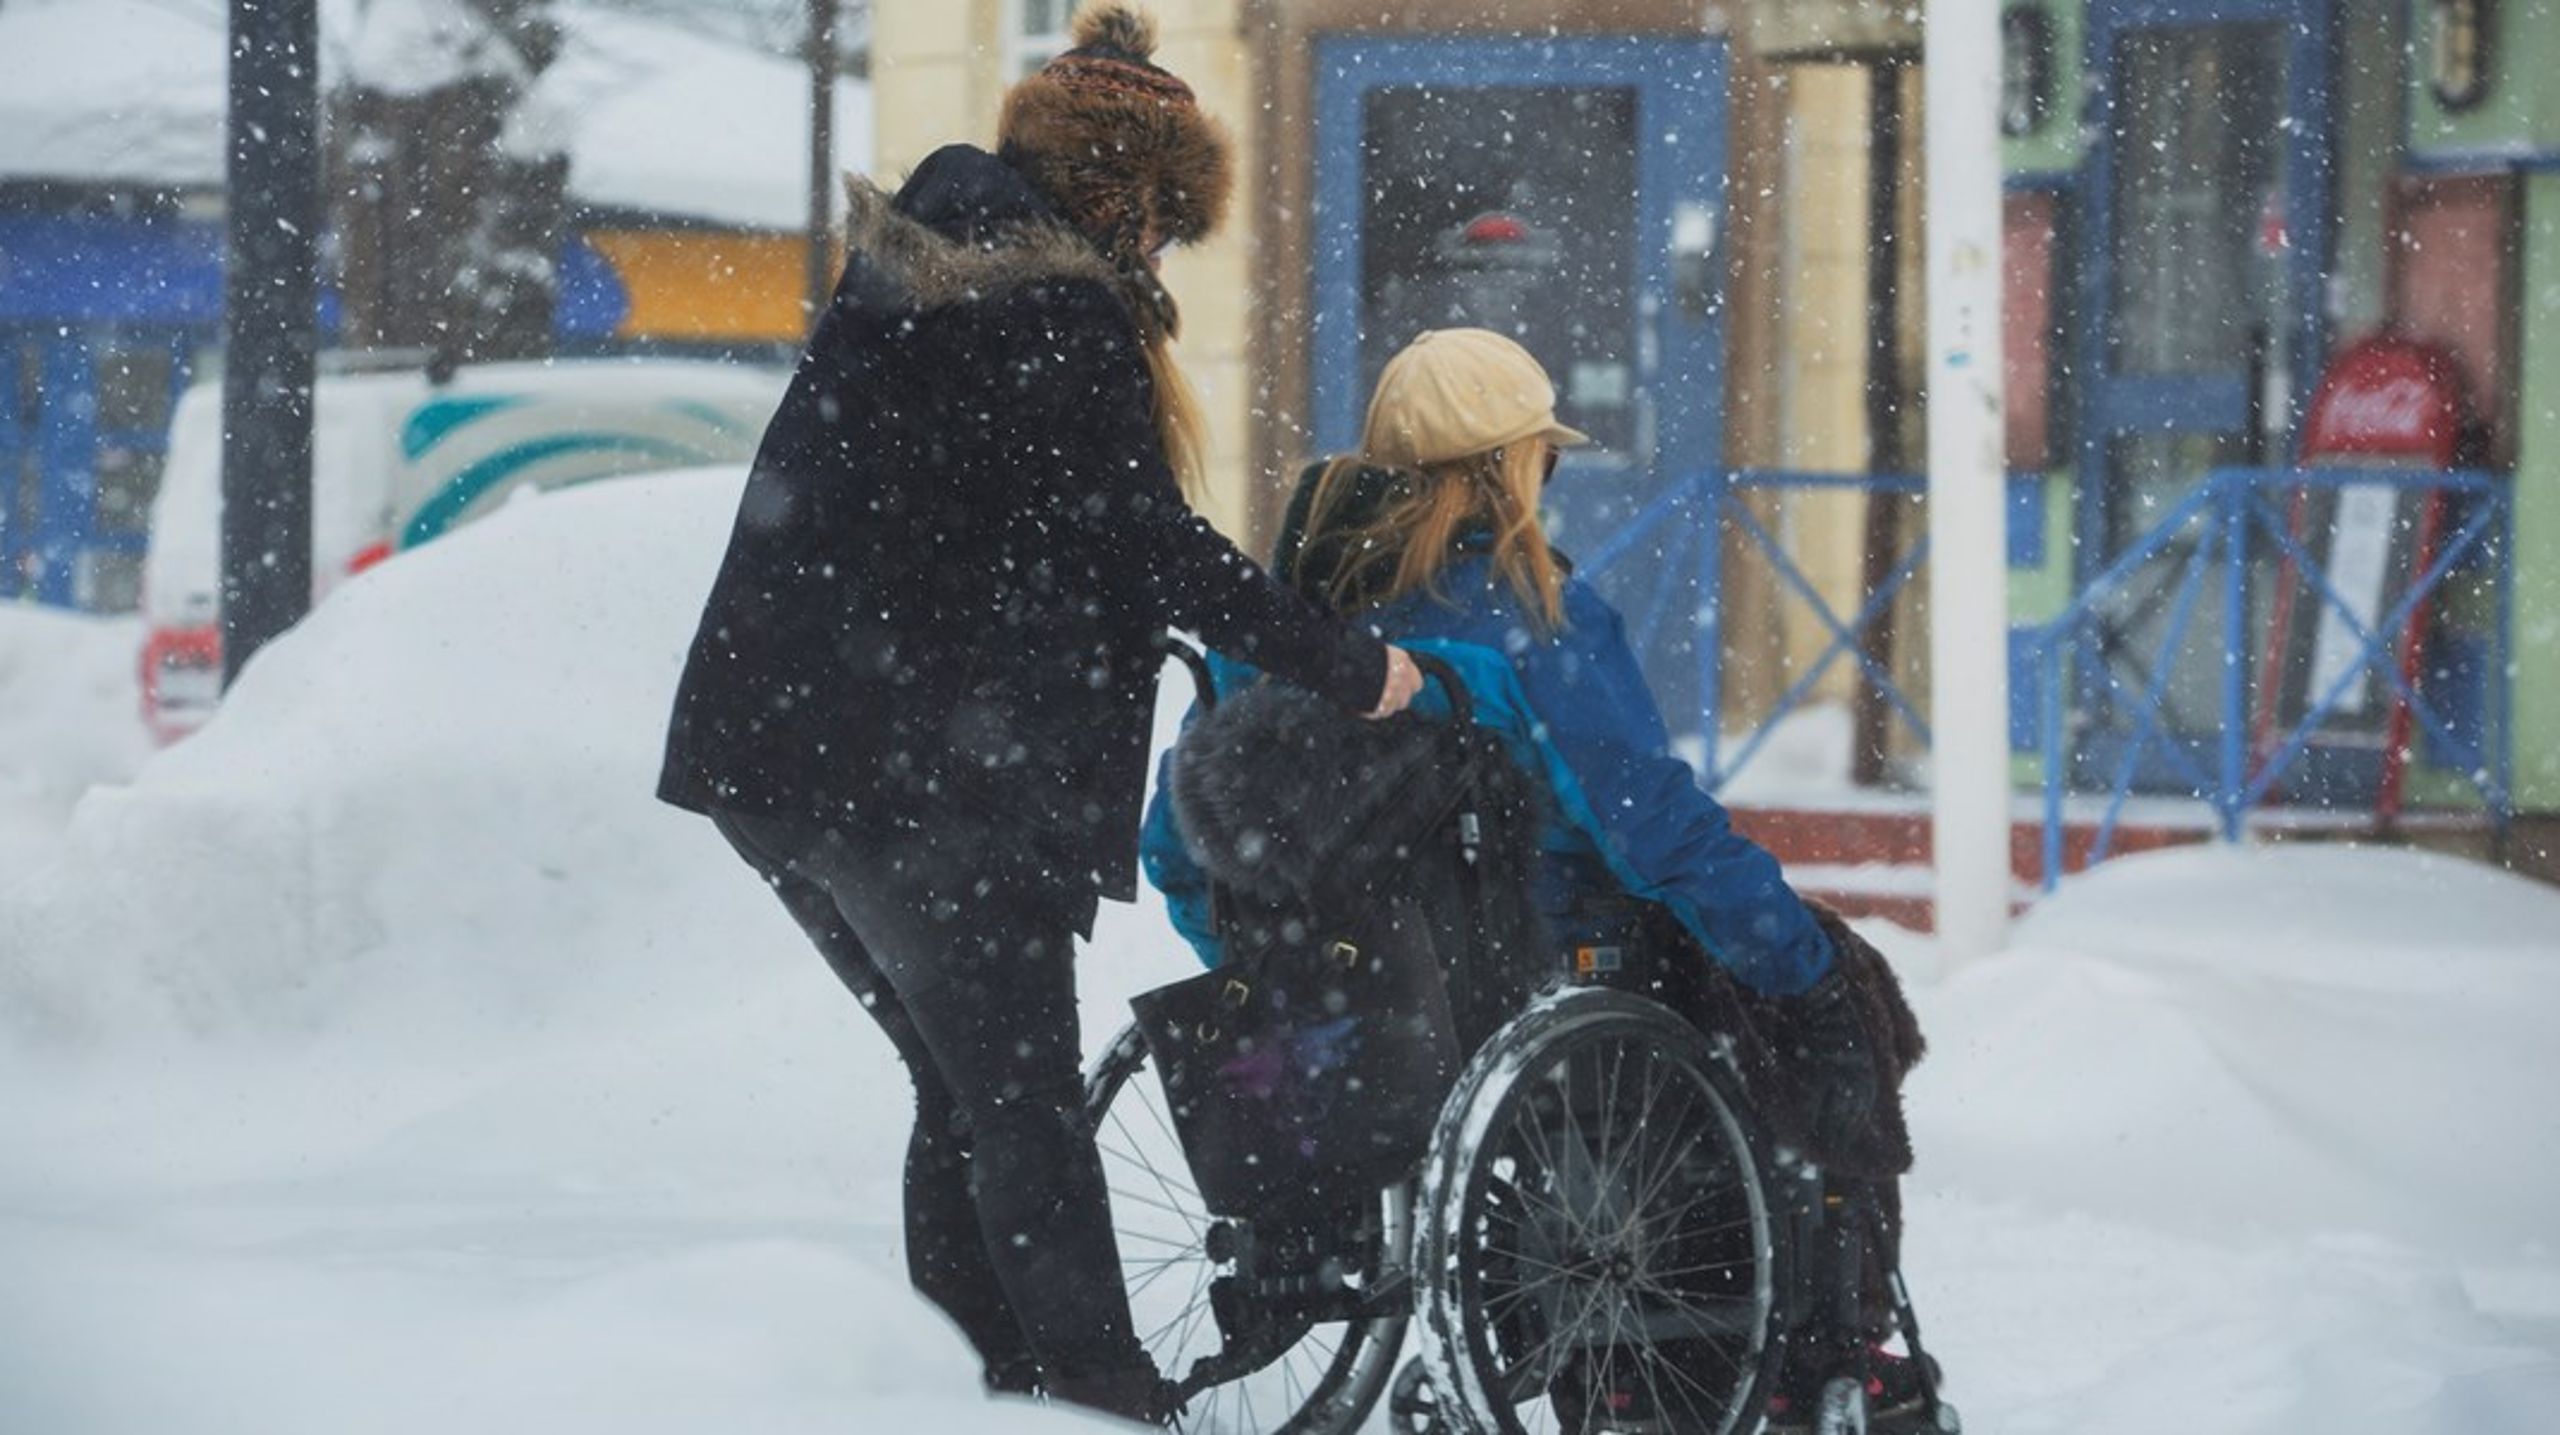 Genom att möjliggöra ett självständigt liv för personer med funktionsnedsättning via den personliga assistansen frigörs fler människors fulla potential och resurser, skriver debattörerna.